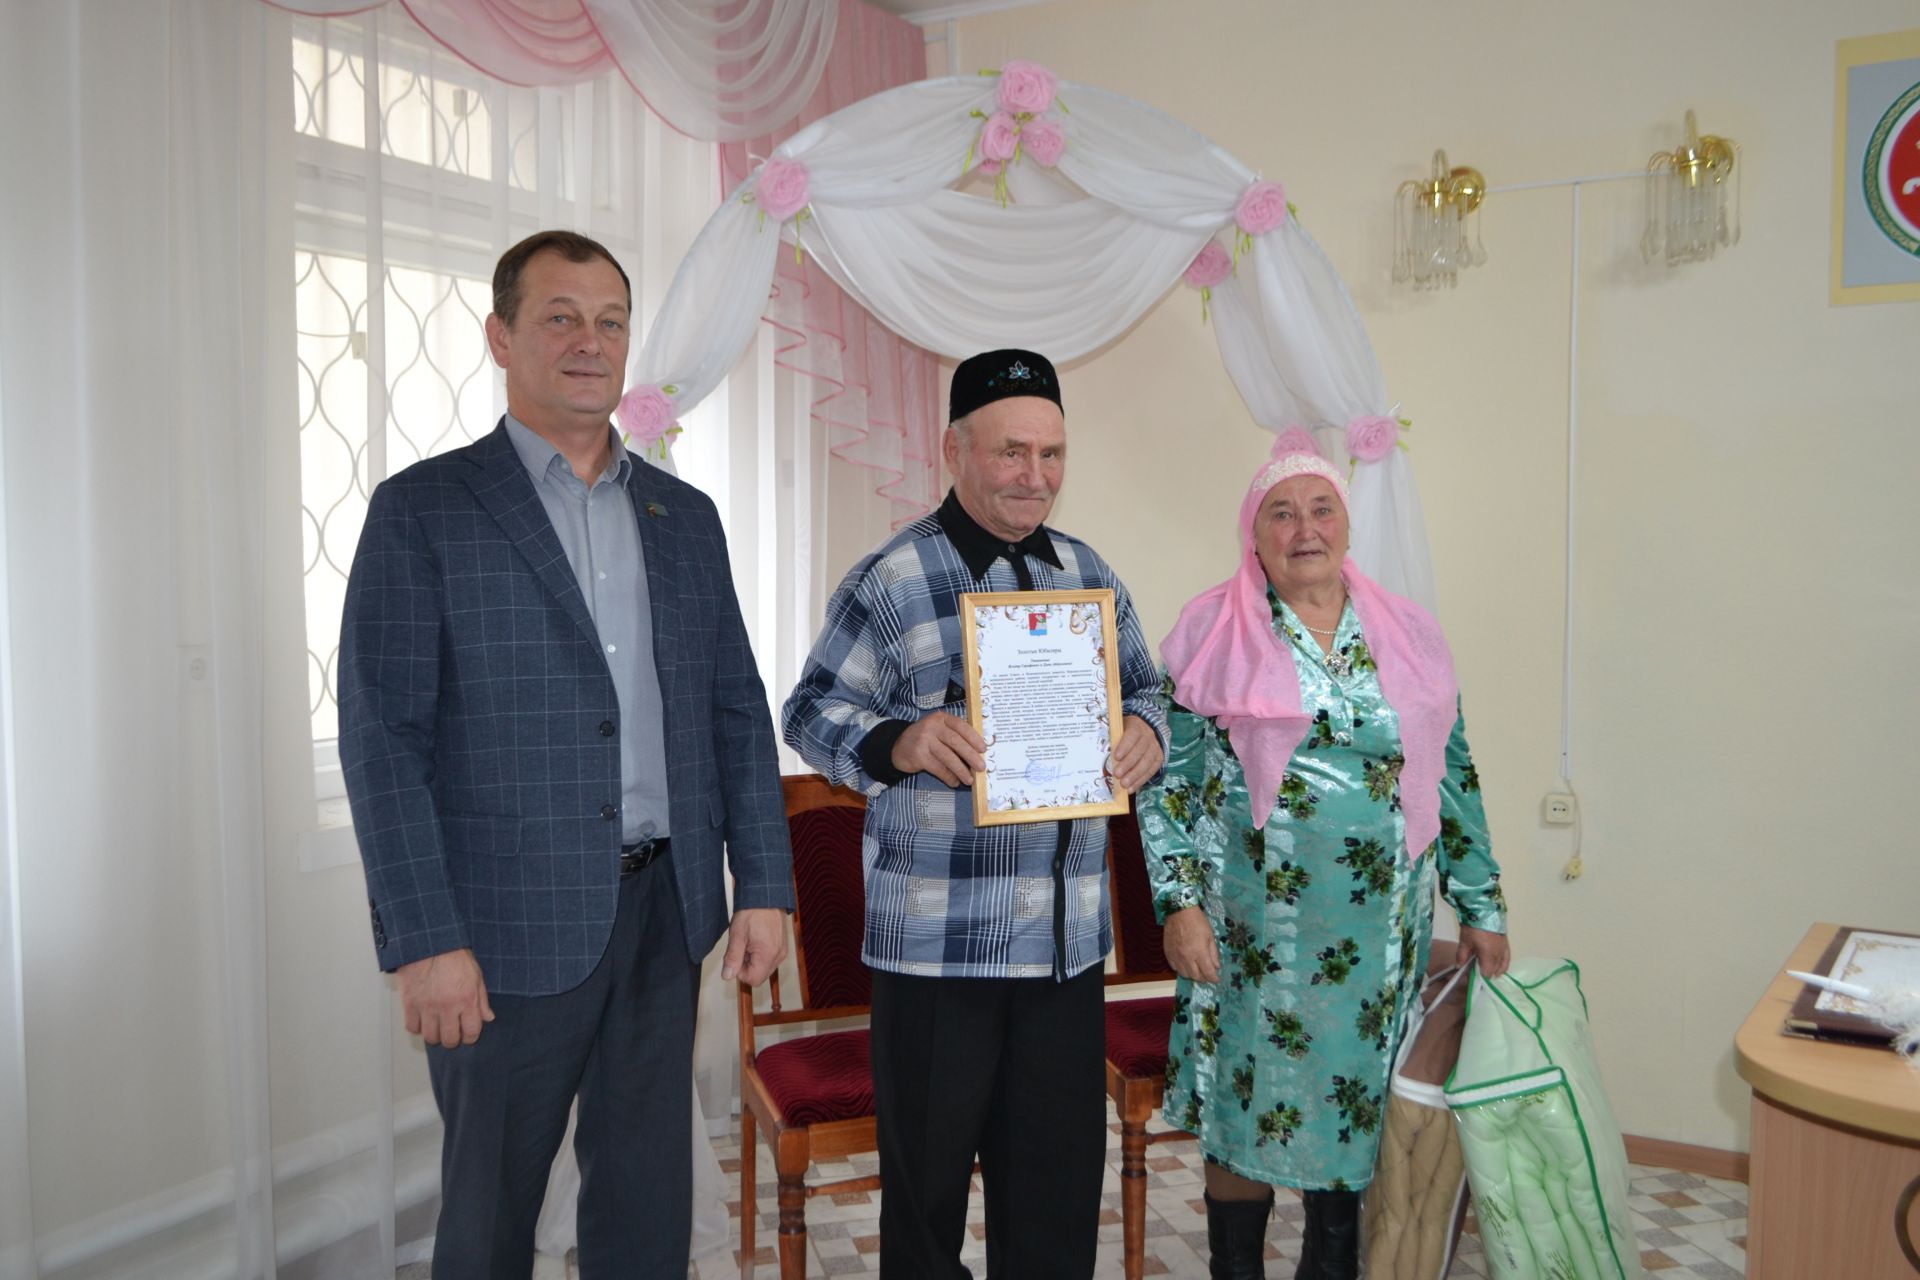 Неразлучно полвека идут они рядом: 50 лет совместной жизни отметили супруги Мухаметзяновы из Татарского Маматкозина